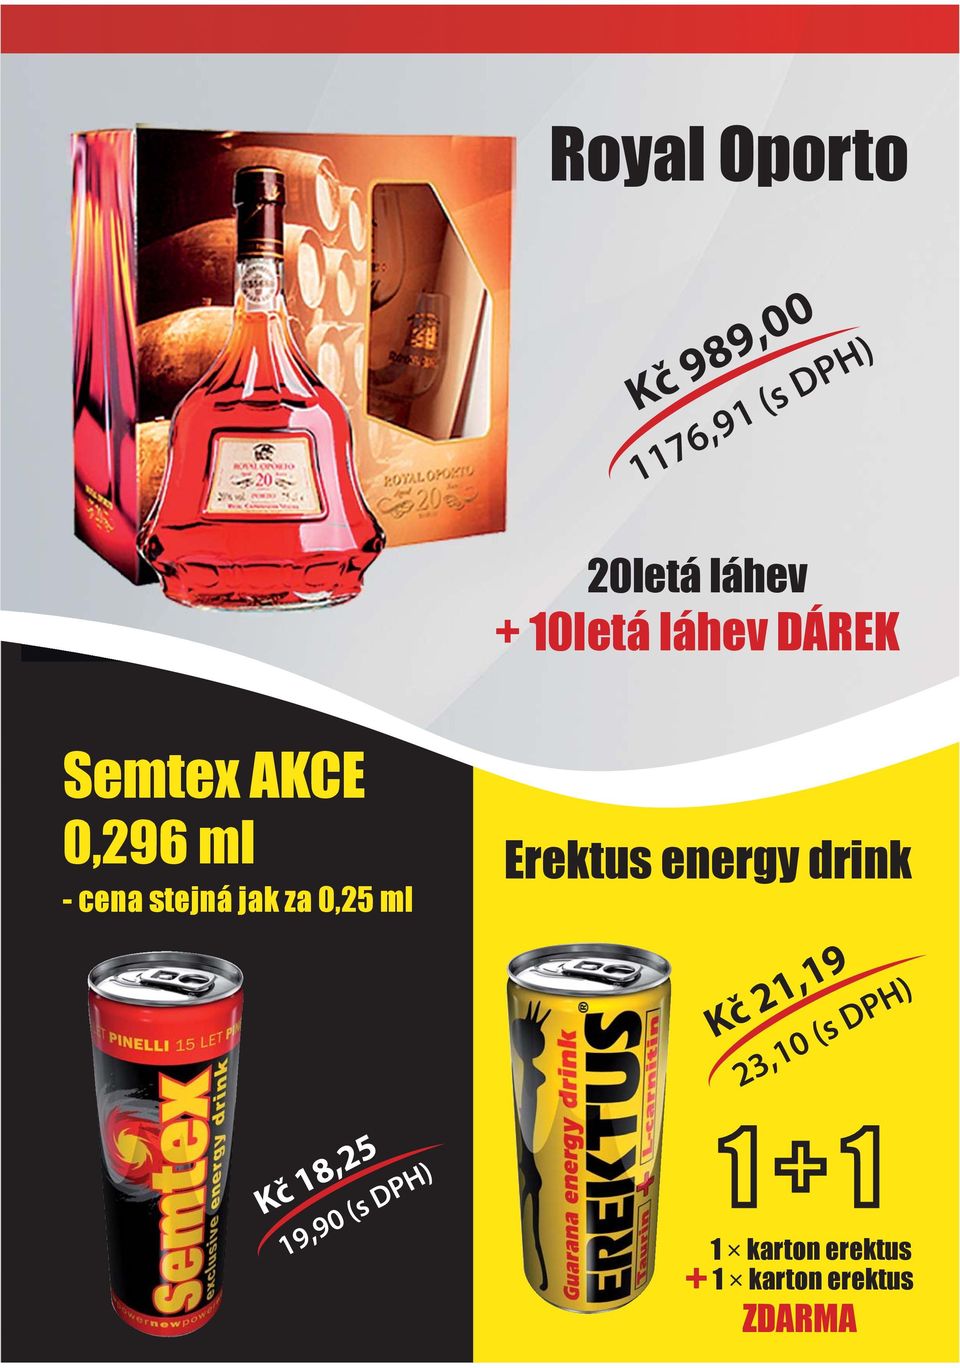 za 0,25 ml Kč 18,25 Erektus energy drink 23,10 (s DPH) 1 +